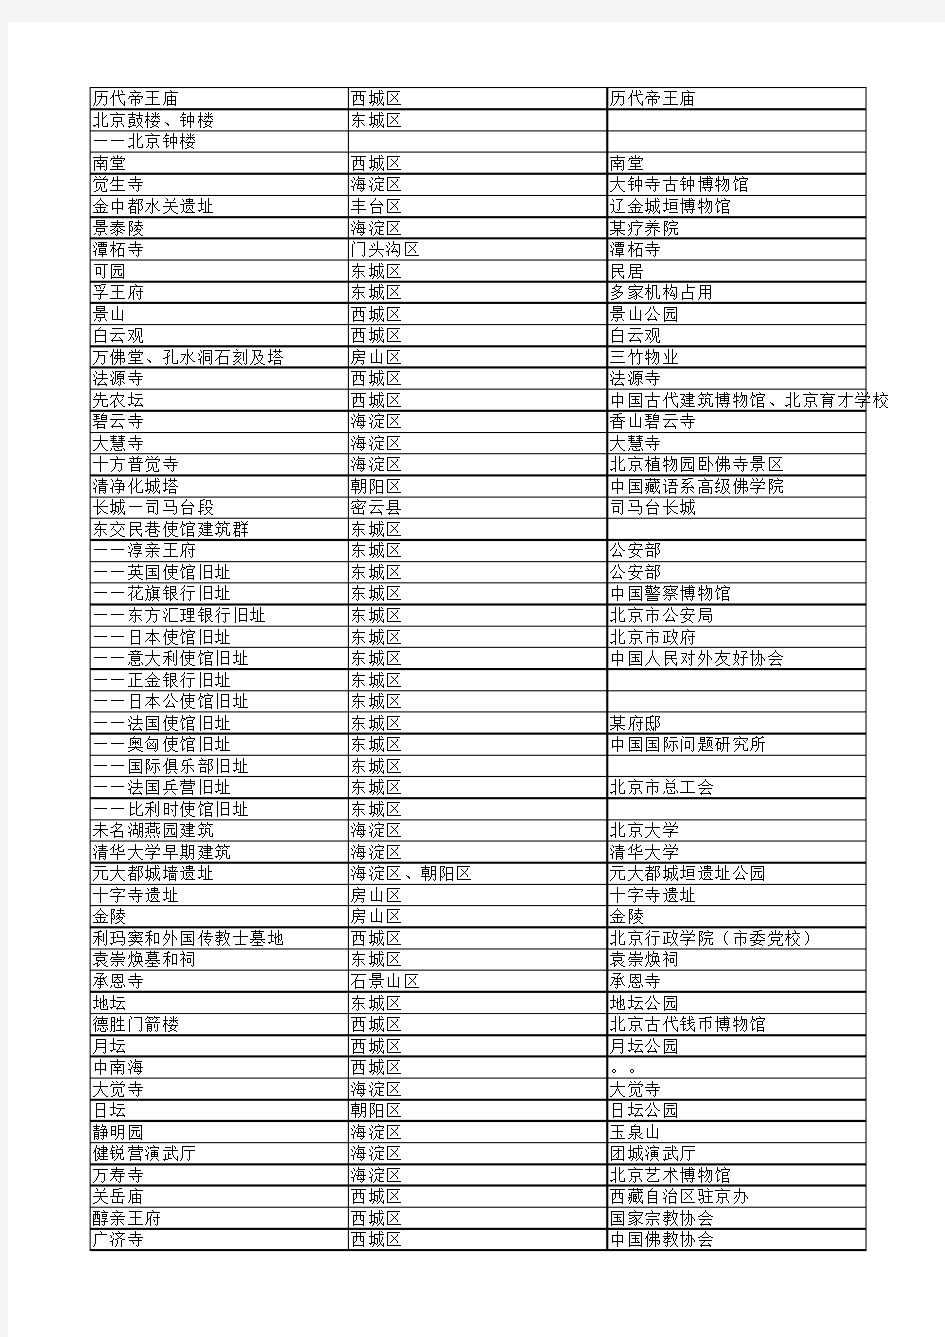 北京市内-全国重点文物保护单位清单